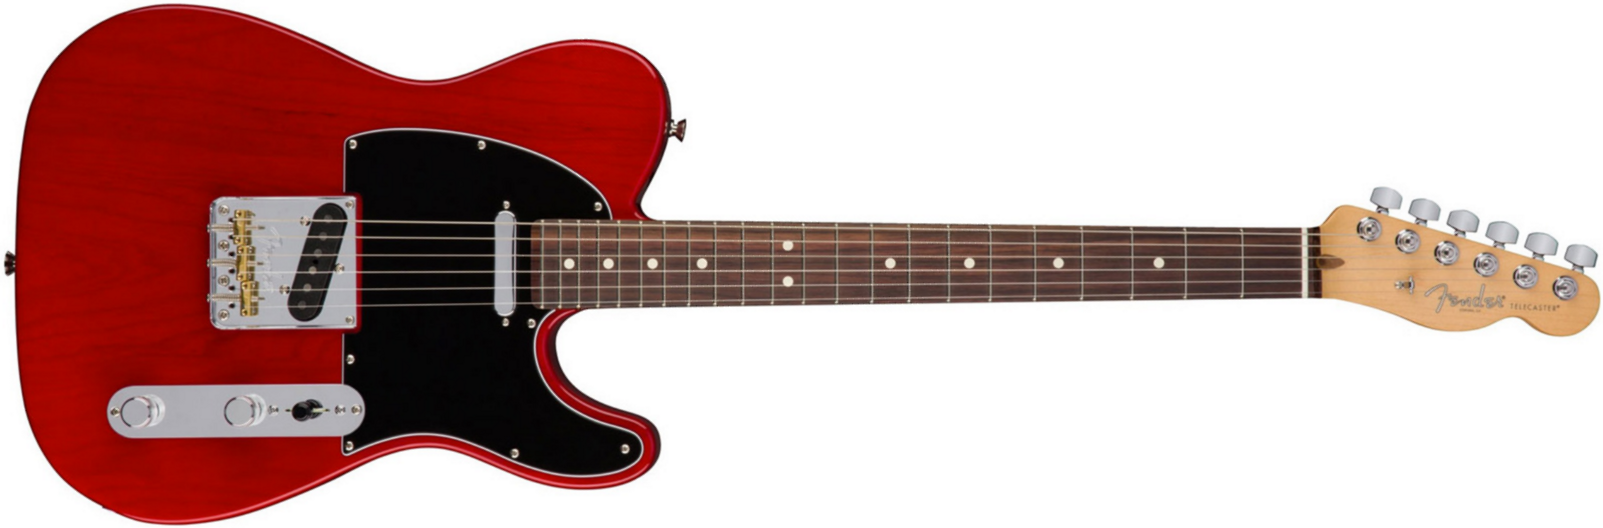 Fender Tele American Professional 2s Usa Rw - Crimson Red Transparent - Guitare Électrique Forme Str - Main picture